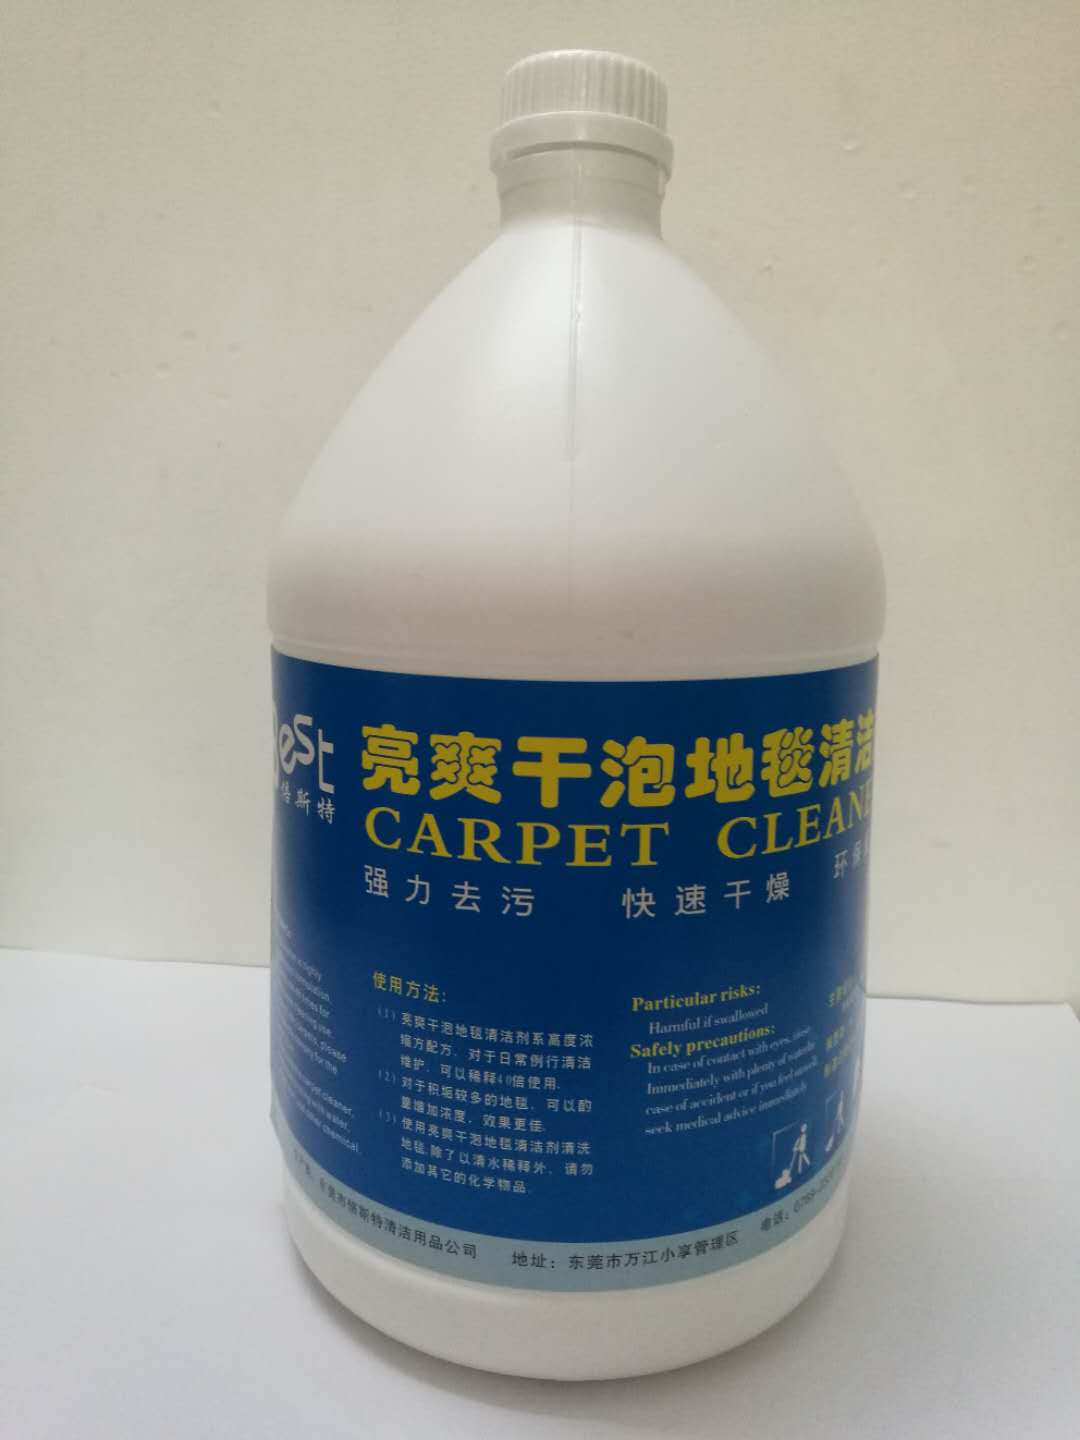 东莞地毯清洁剂 供应广东地毯清洁剂去污清洗好帮手 供应广东干炮亮爽地毯水清洁保养